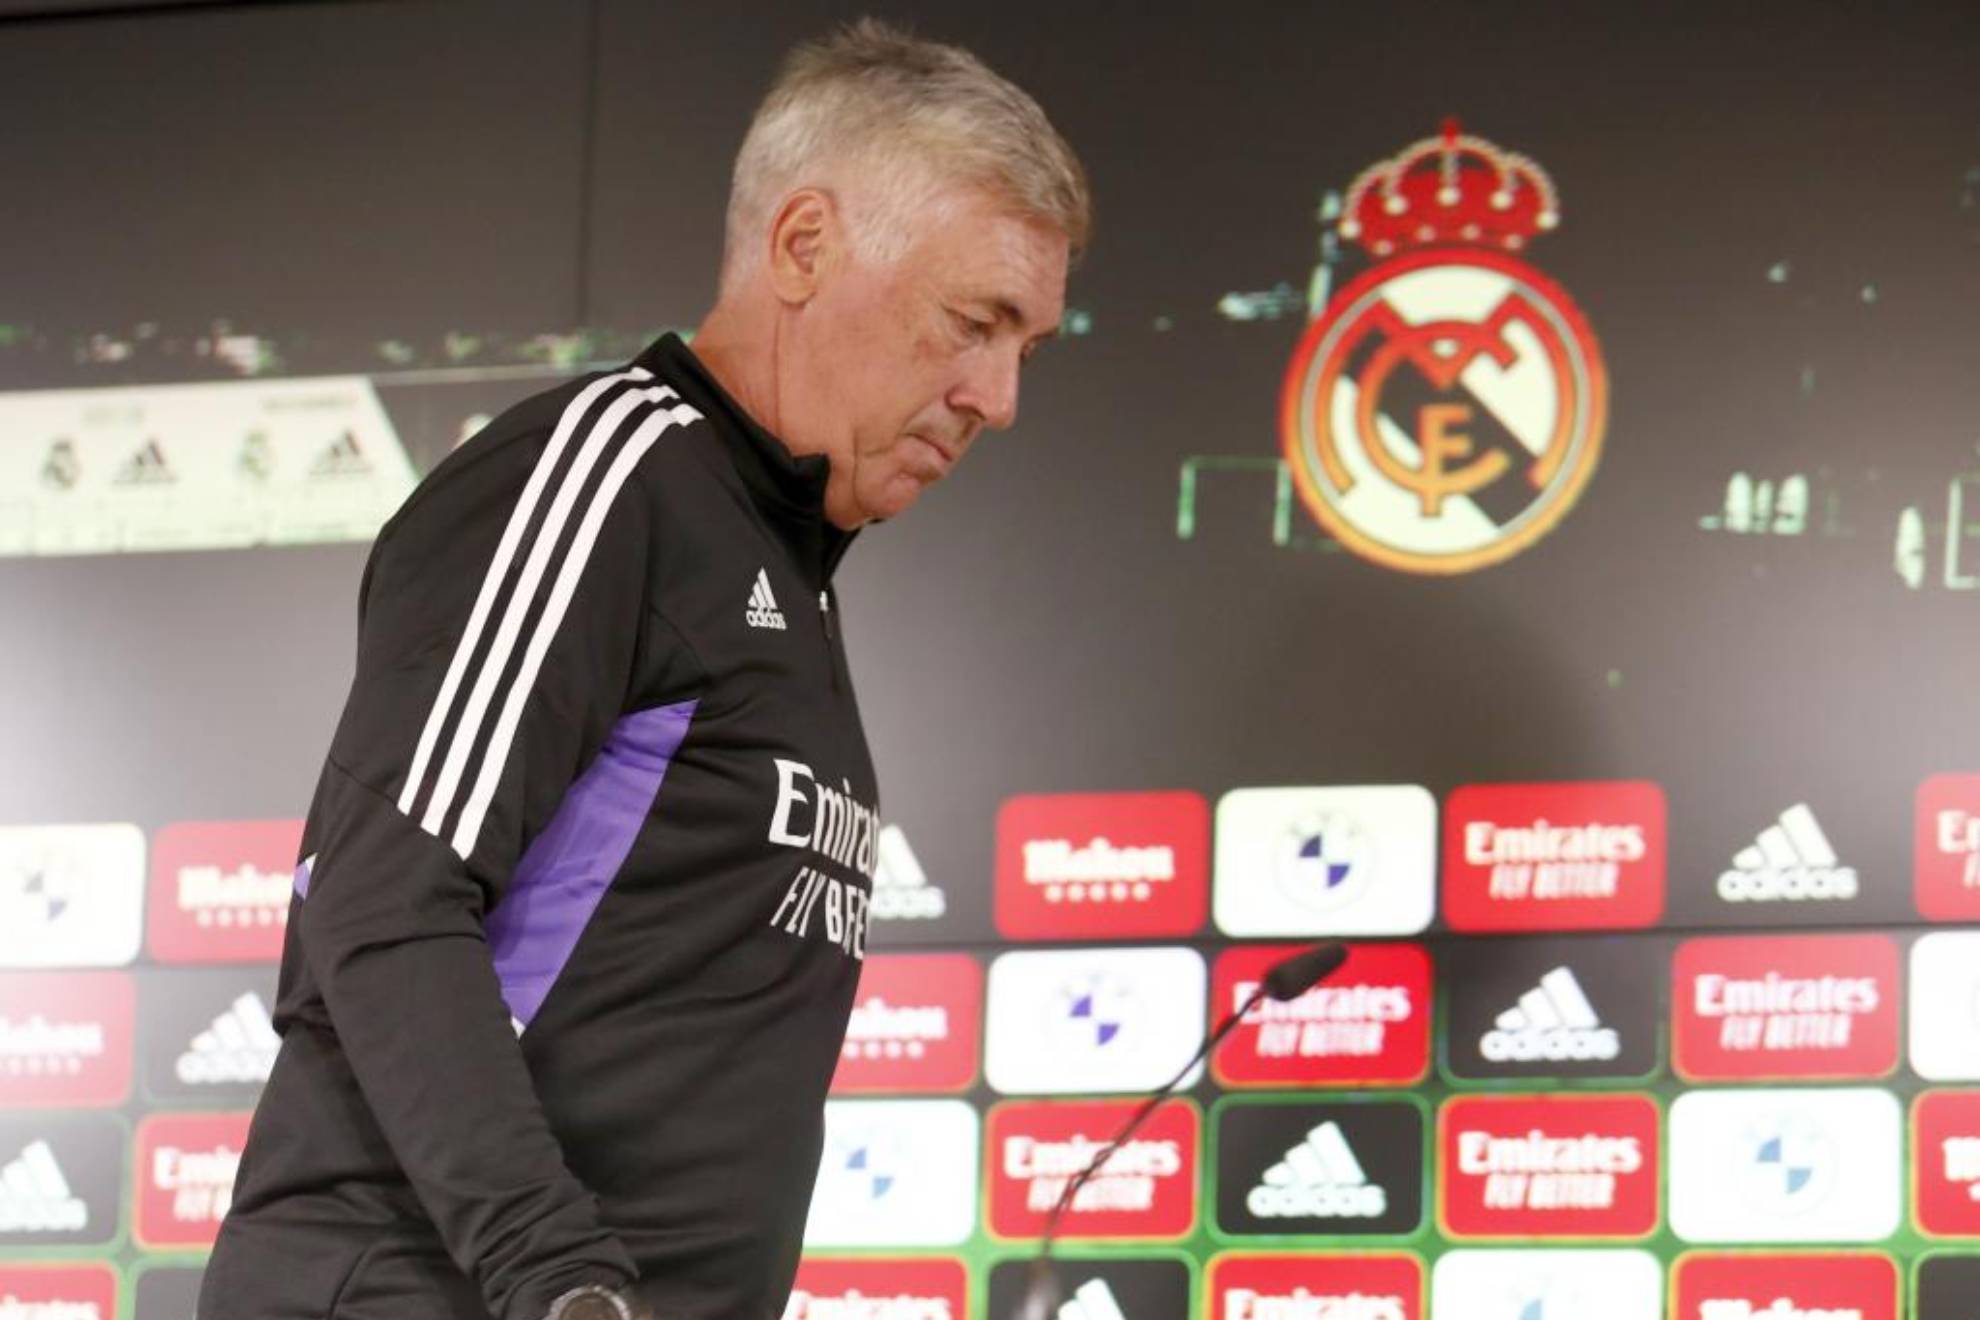 Real Madrid: La rueda de prensa de Carlo Ancelotti, en directo